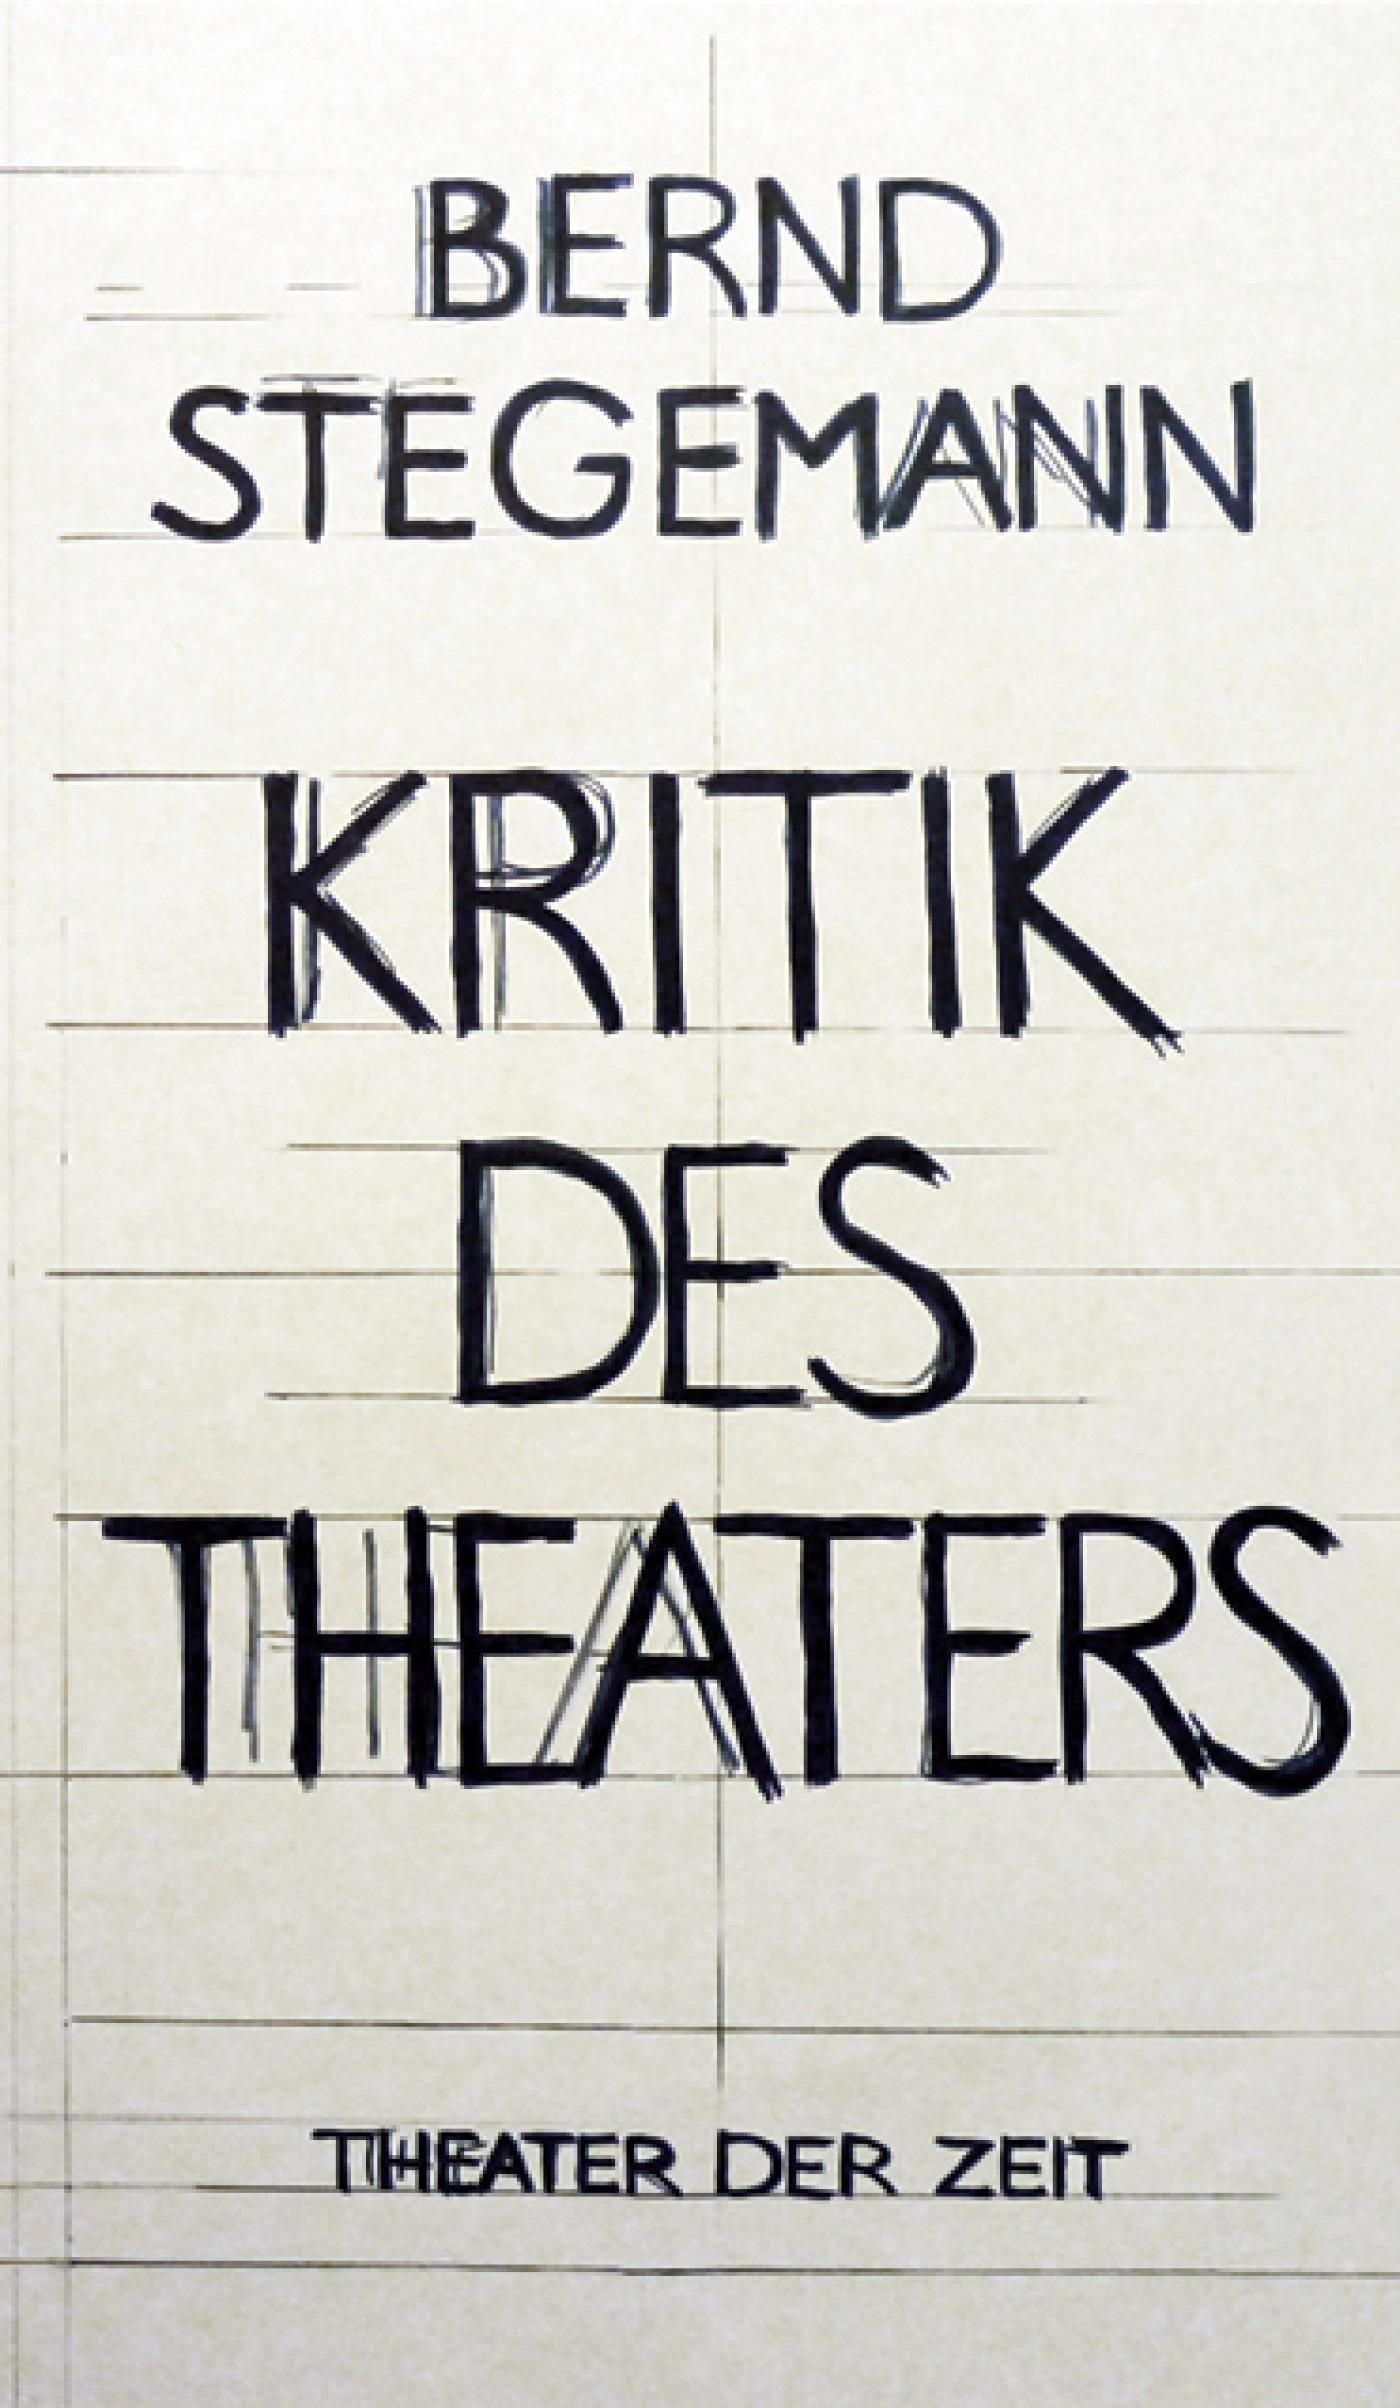 "Kritik des Theaters"